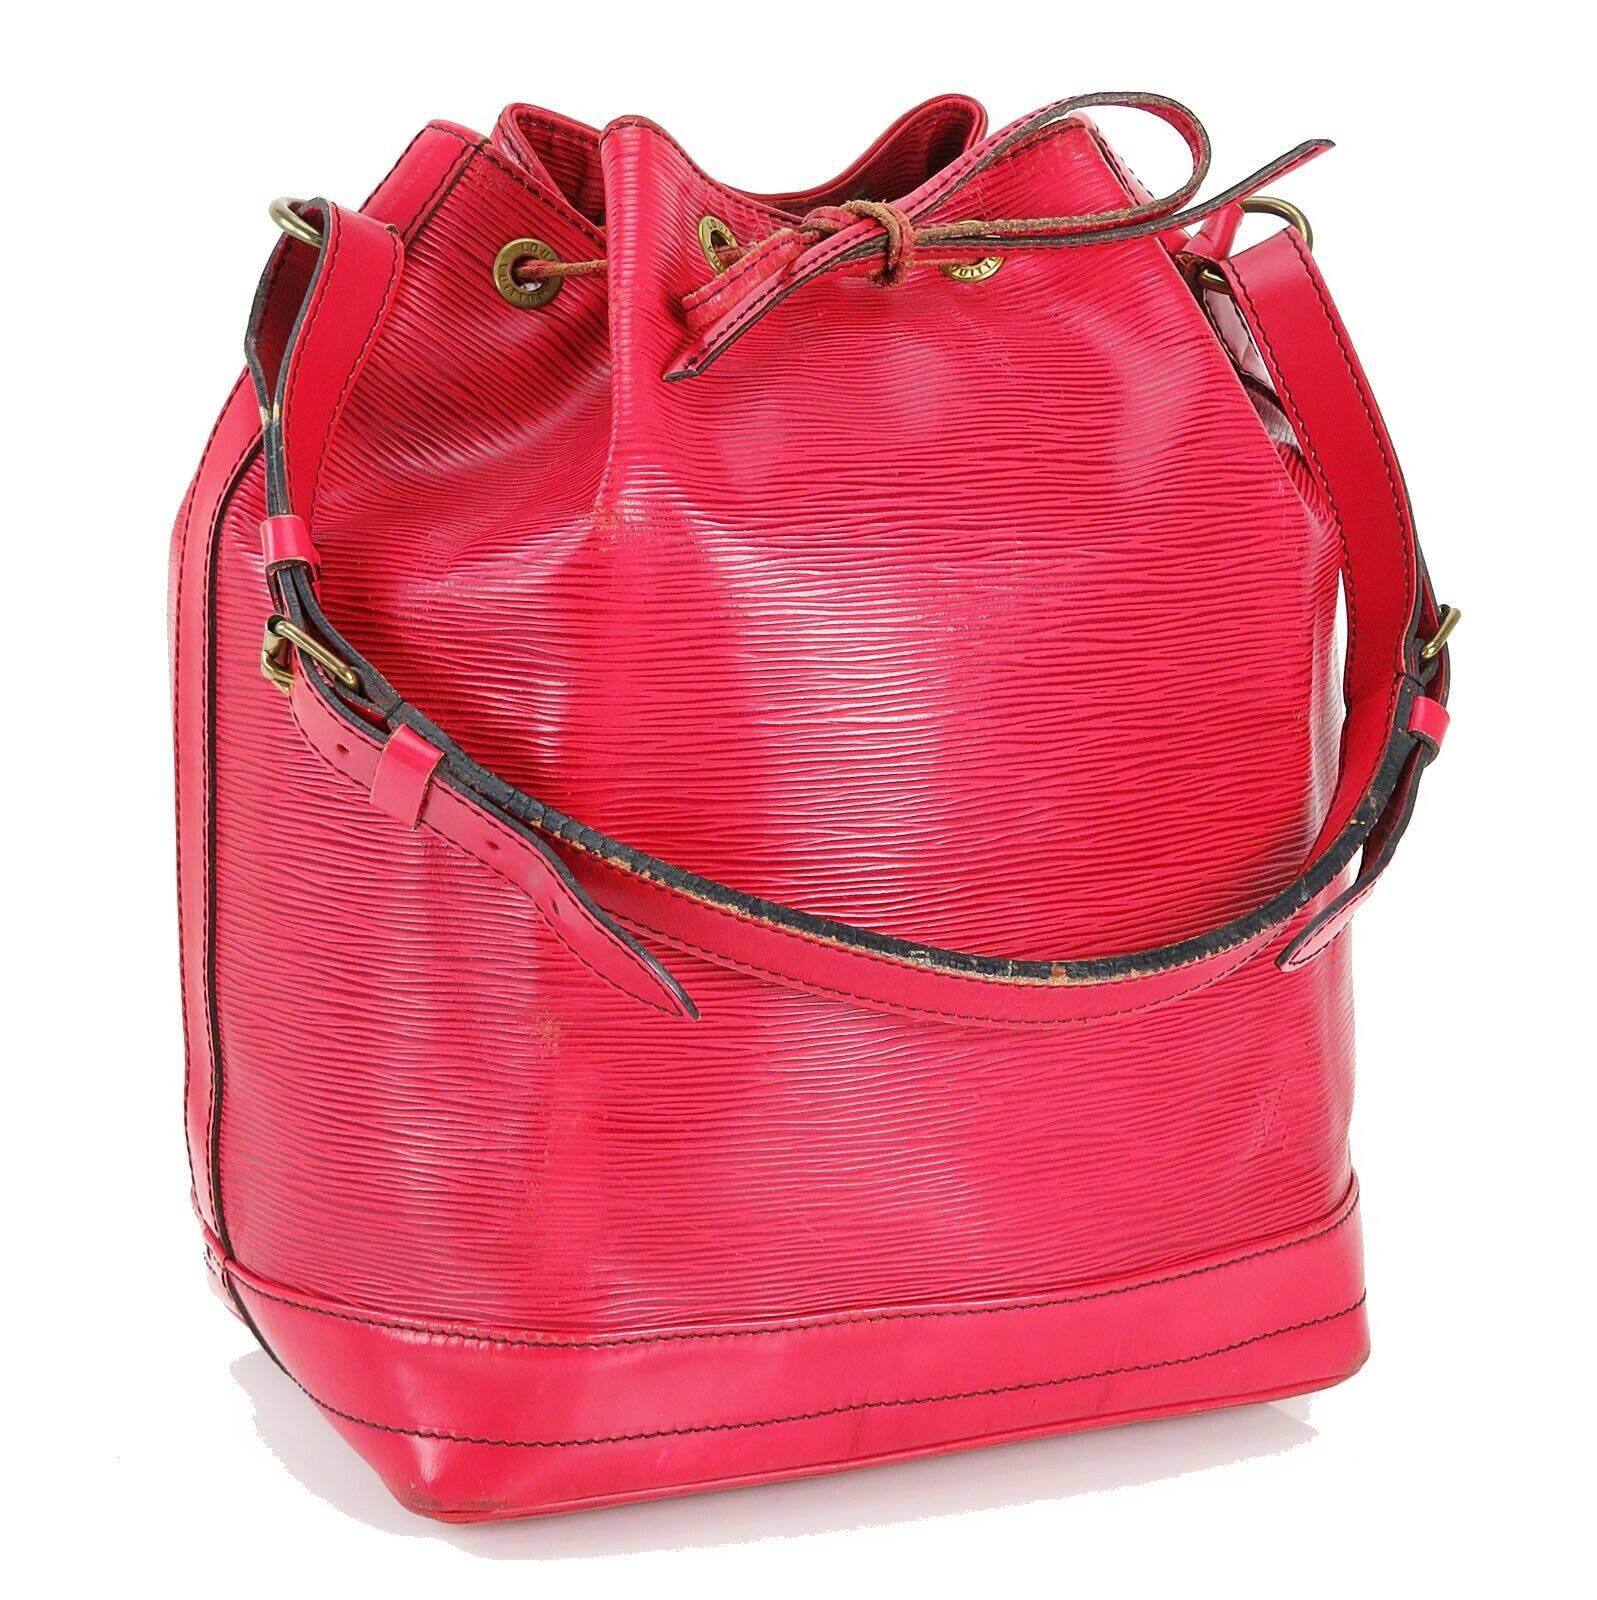 Authentic LOUIS VUITTON Noe Red Epi Leather Shoulder Tote Bag Purse #33712 - Women&#39;s Bags & Handbags